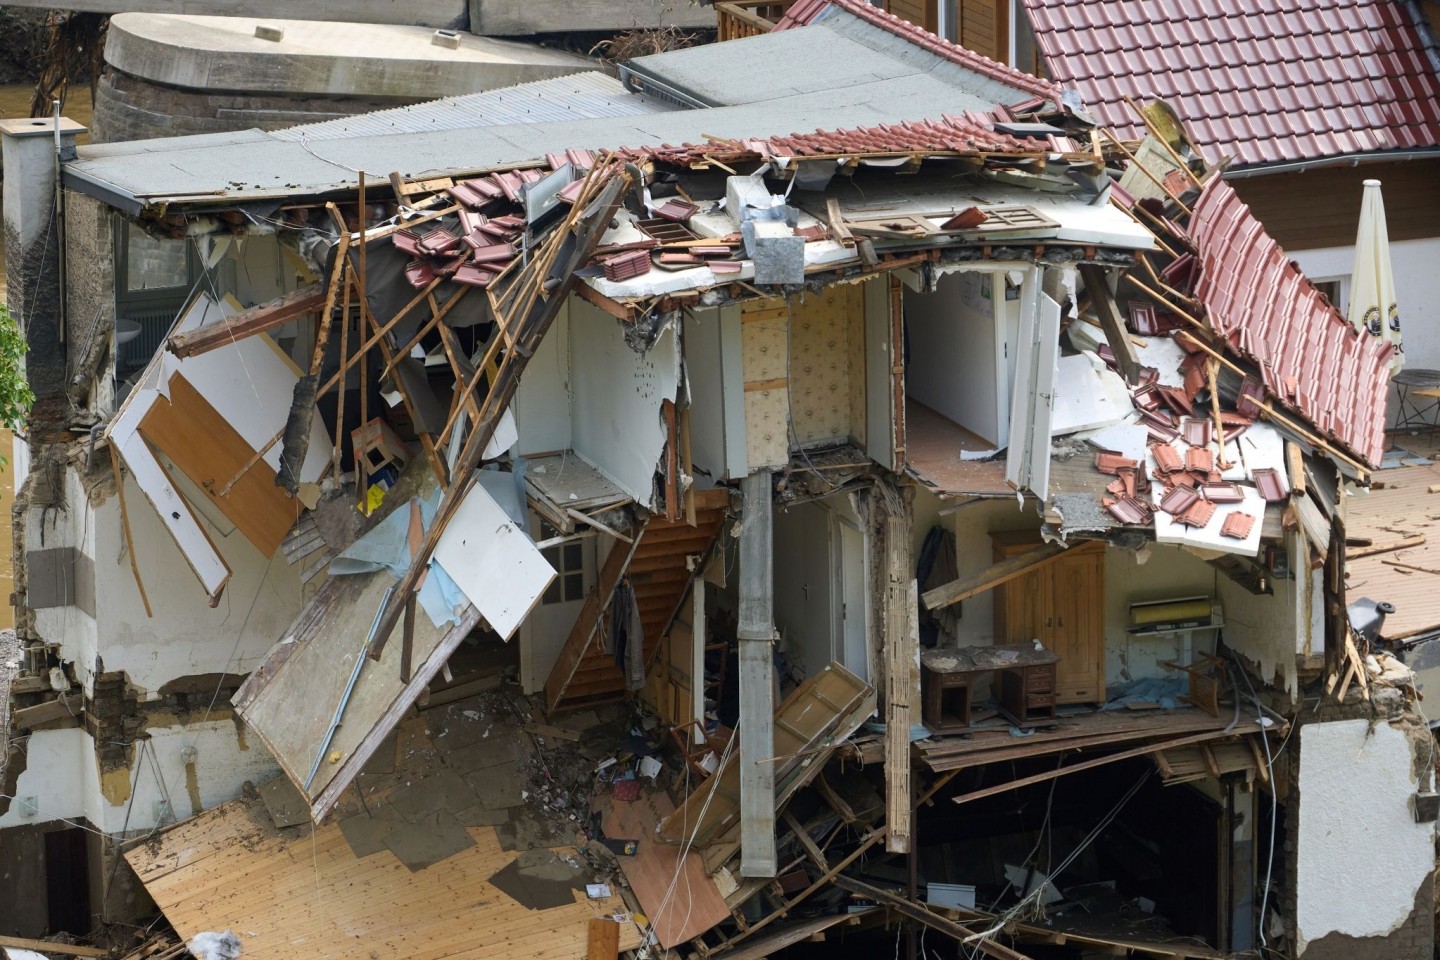 Häuser im Ahrtal im Ortsteil Walporzheim sind zerstört. Bundesfinanzminister Olaf Scholz hat angesichts der Katastrophe Soforthilfen in dreistelliger Millionenhöhe in Aussicht gestellt.